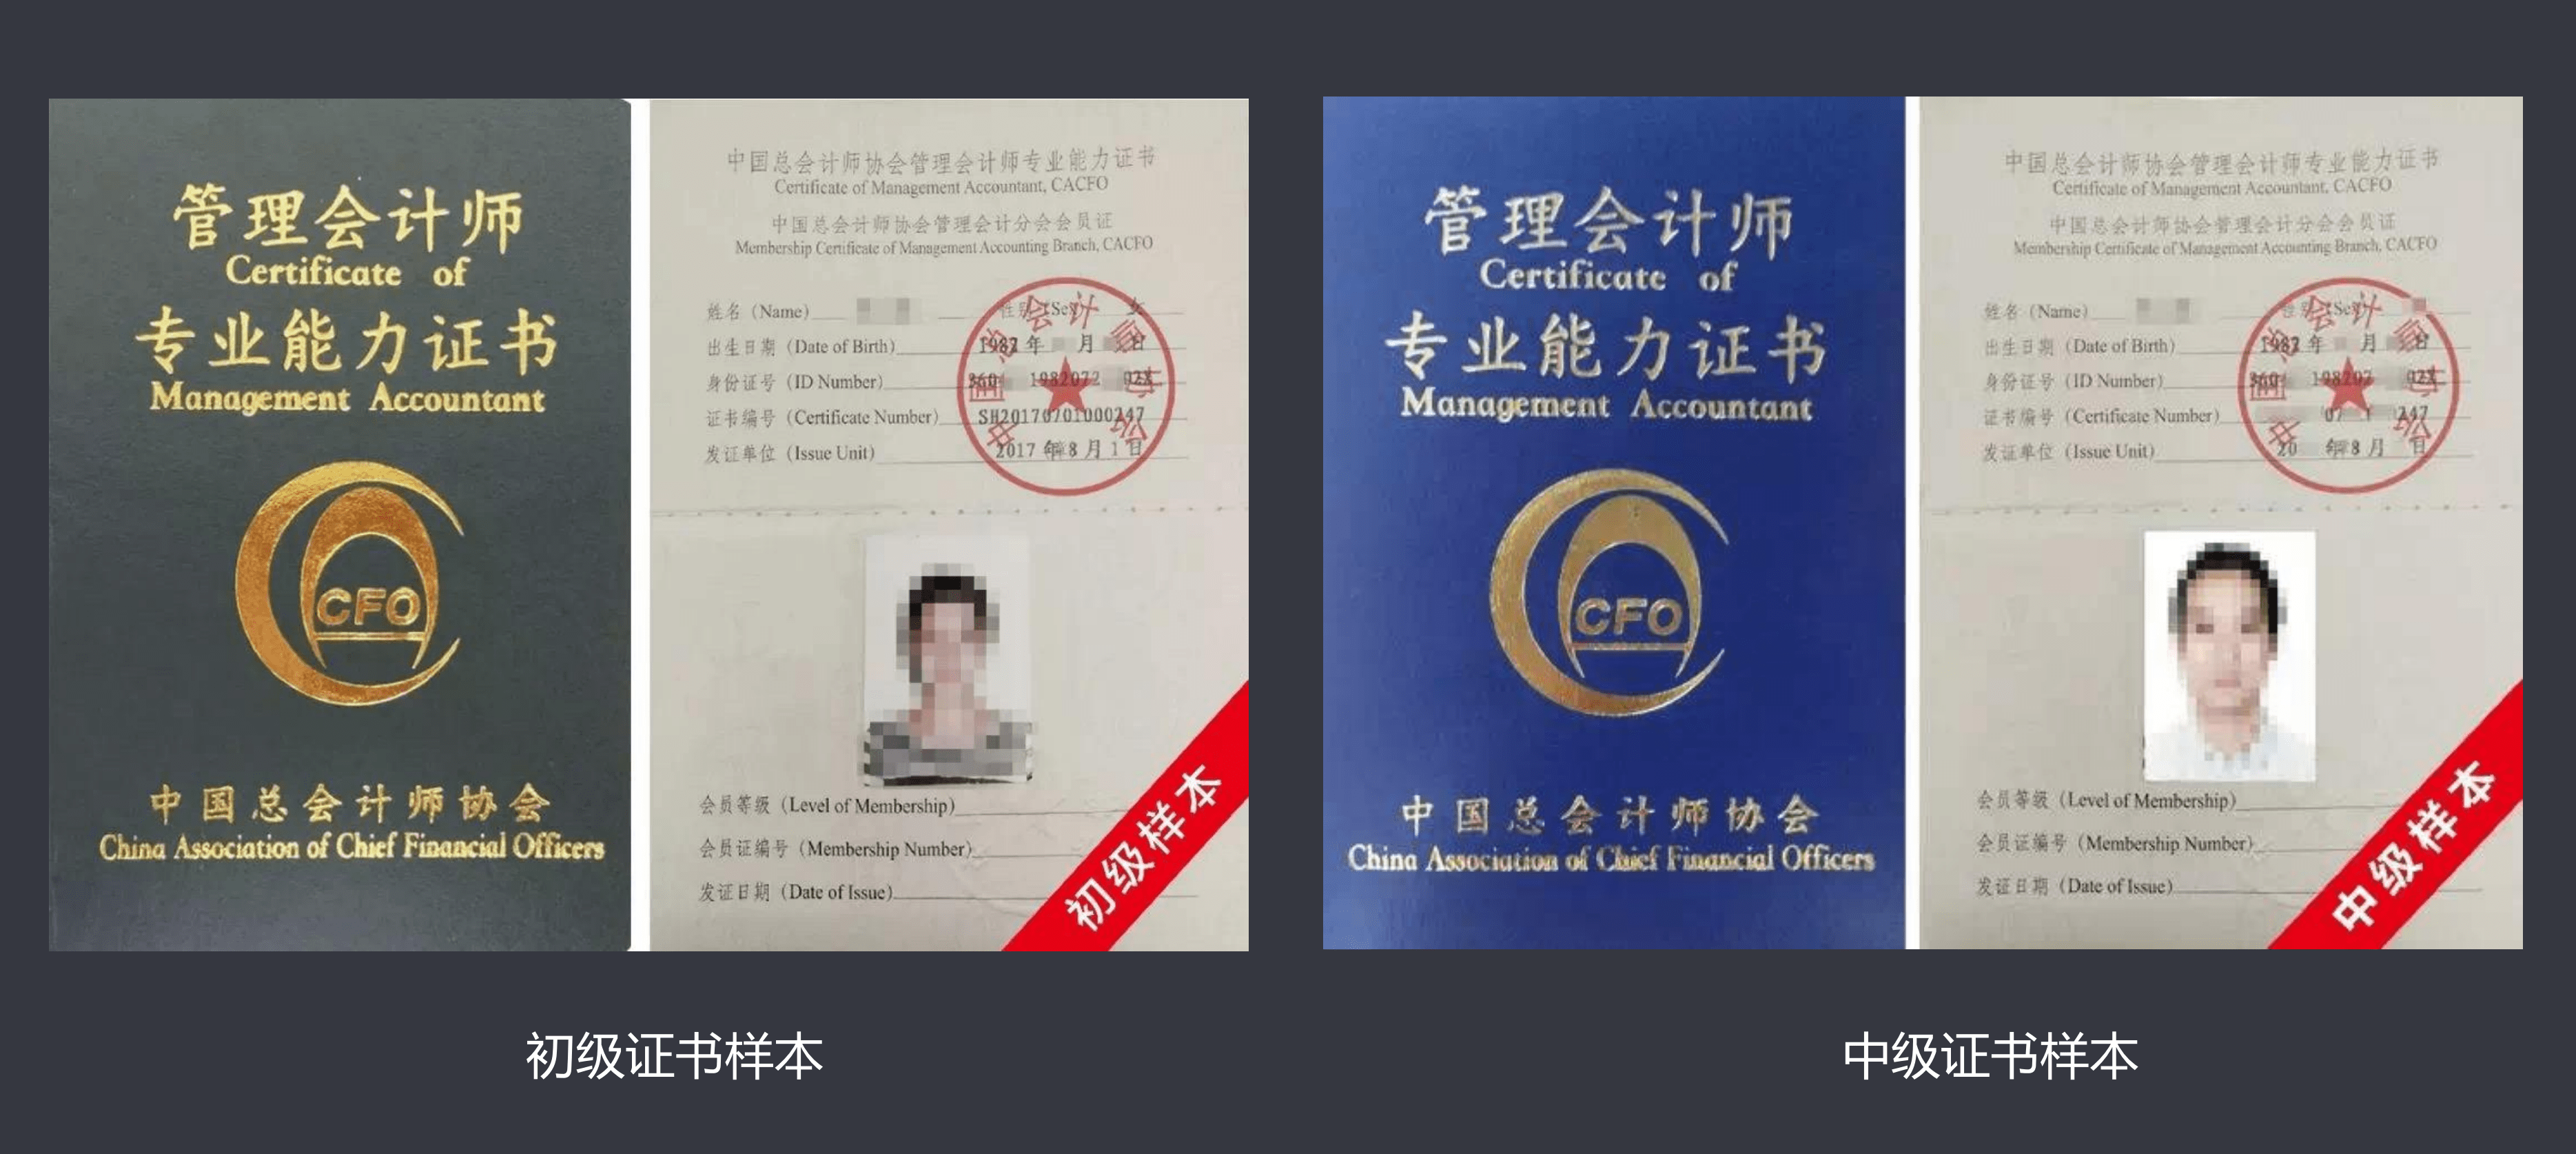 由中国总会计师协会(中总协)颁发,是中国本土管理会计人才铂金级证书